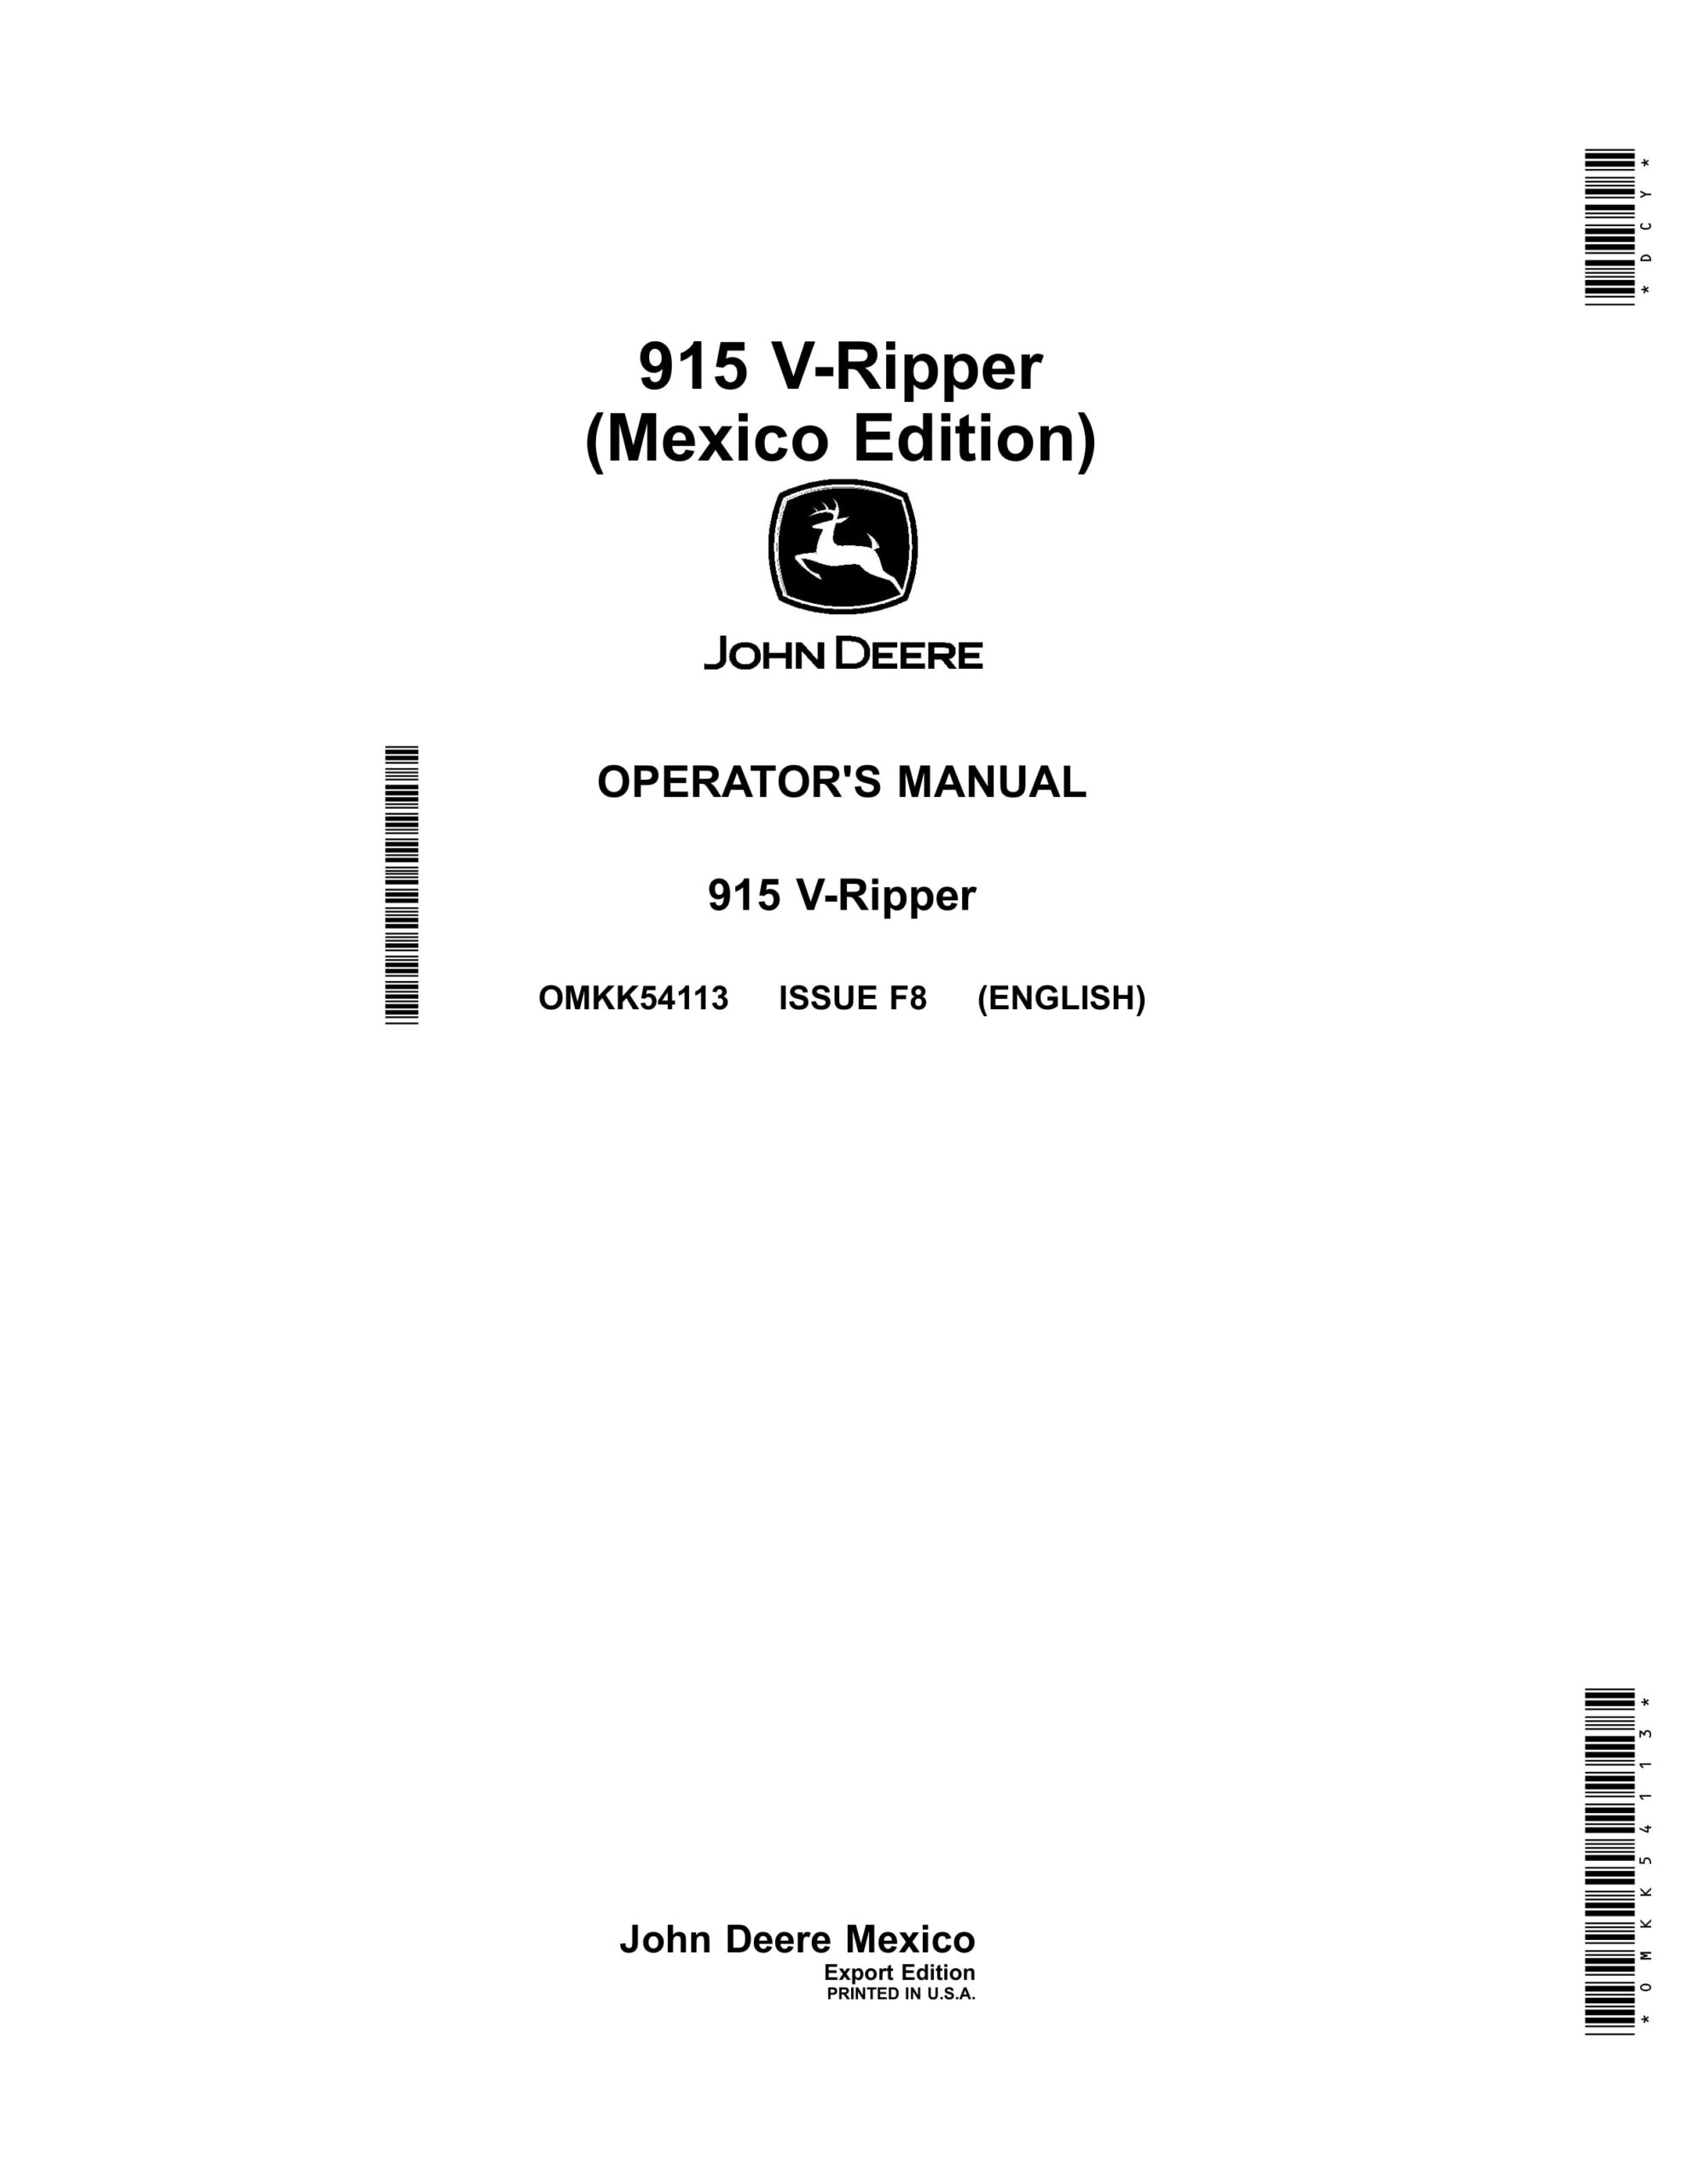 John Deere 915 V-Ripper Operator Manual OMKK54113-1